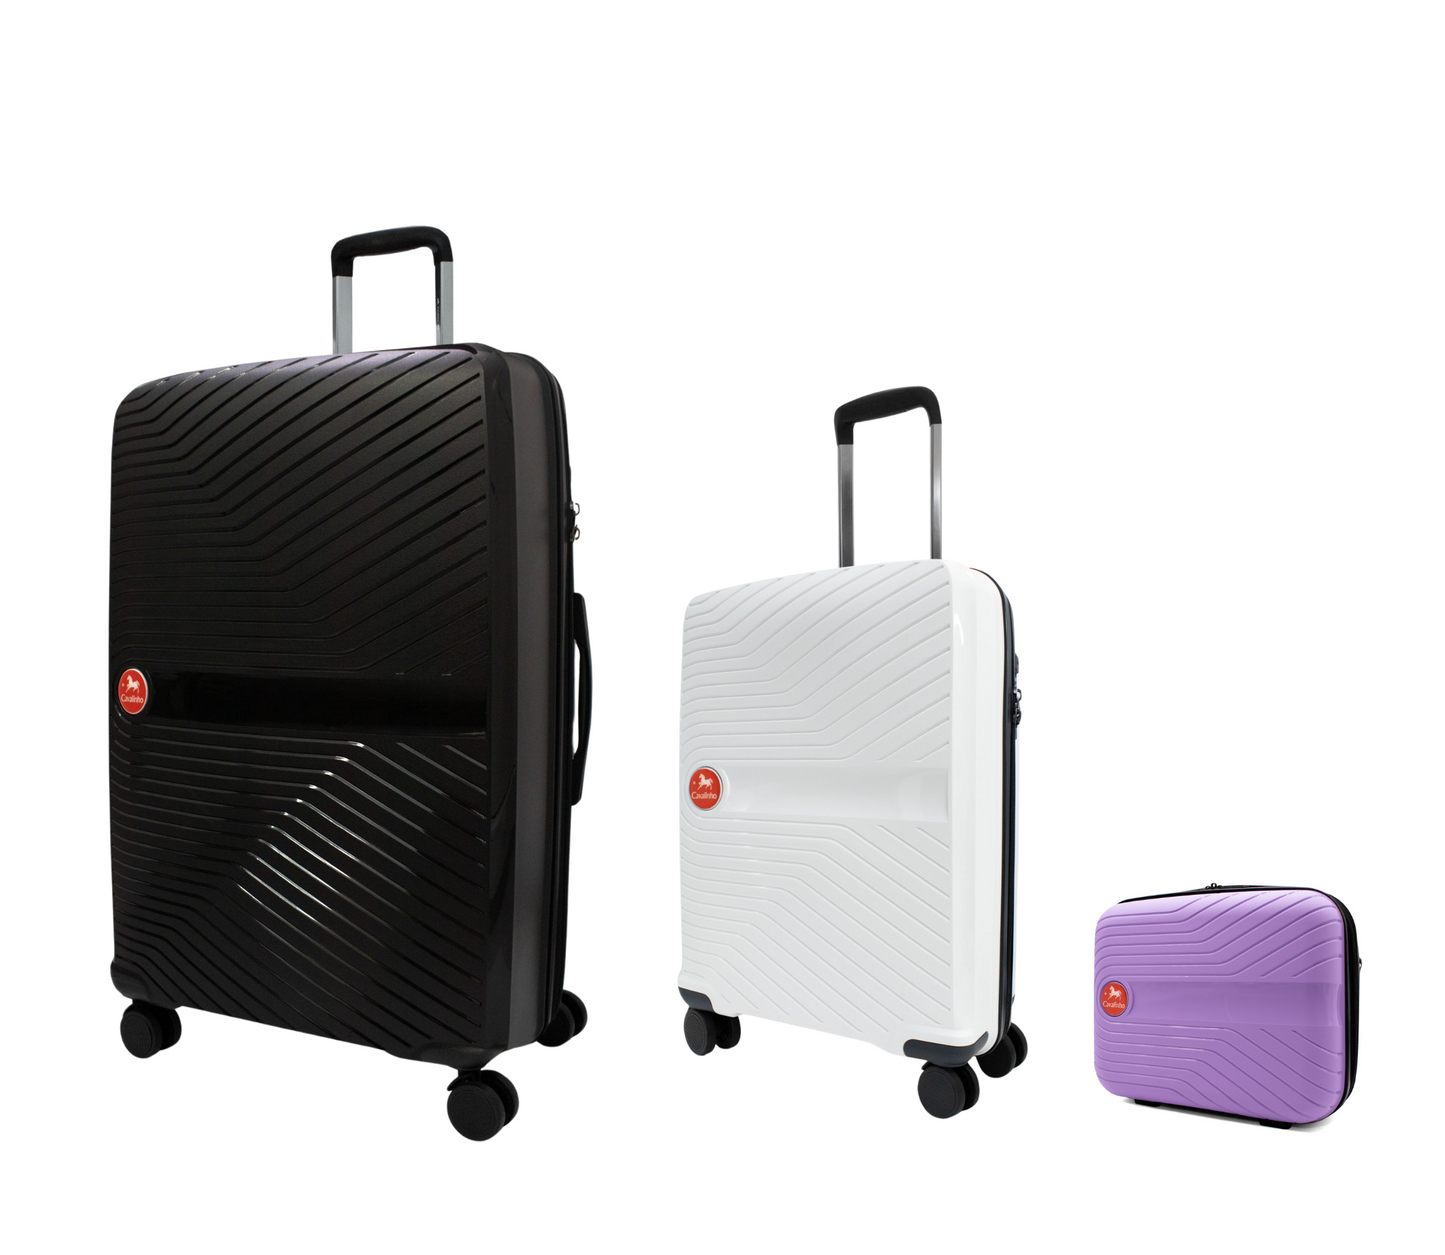 Cavalinho Canada & USA Colorful 3 Piece Luggage Set (15", 19" & 28") - Lilac White Black - 68020004.390601.S151928._2